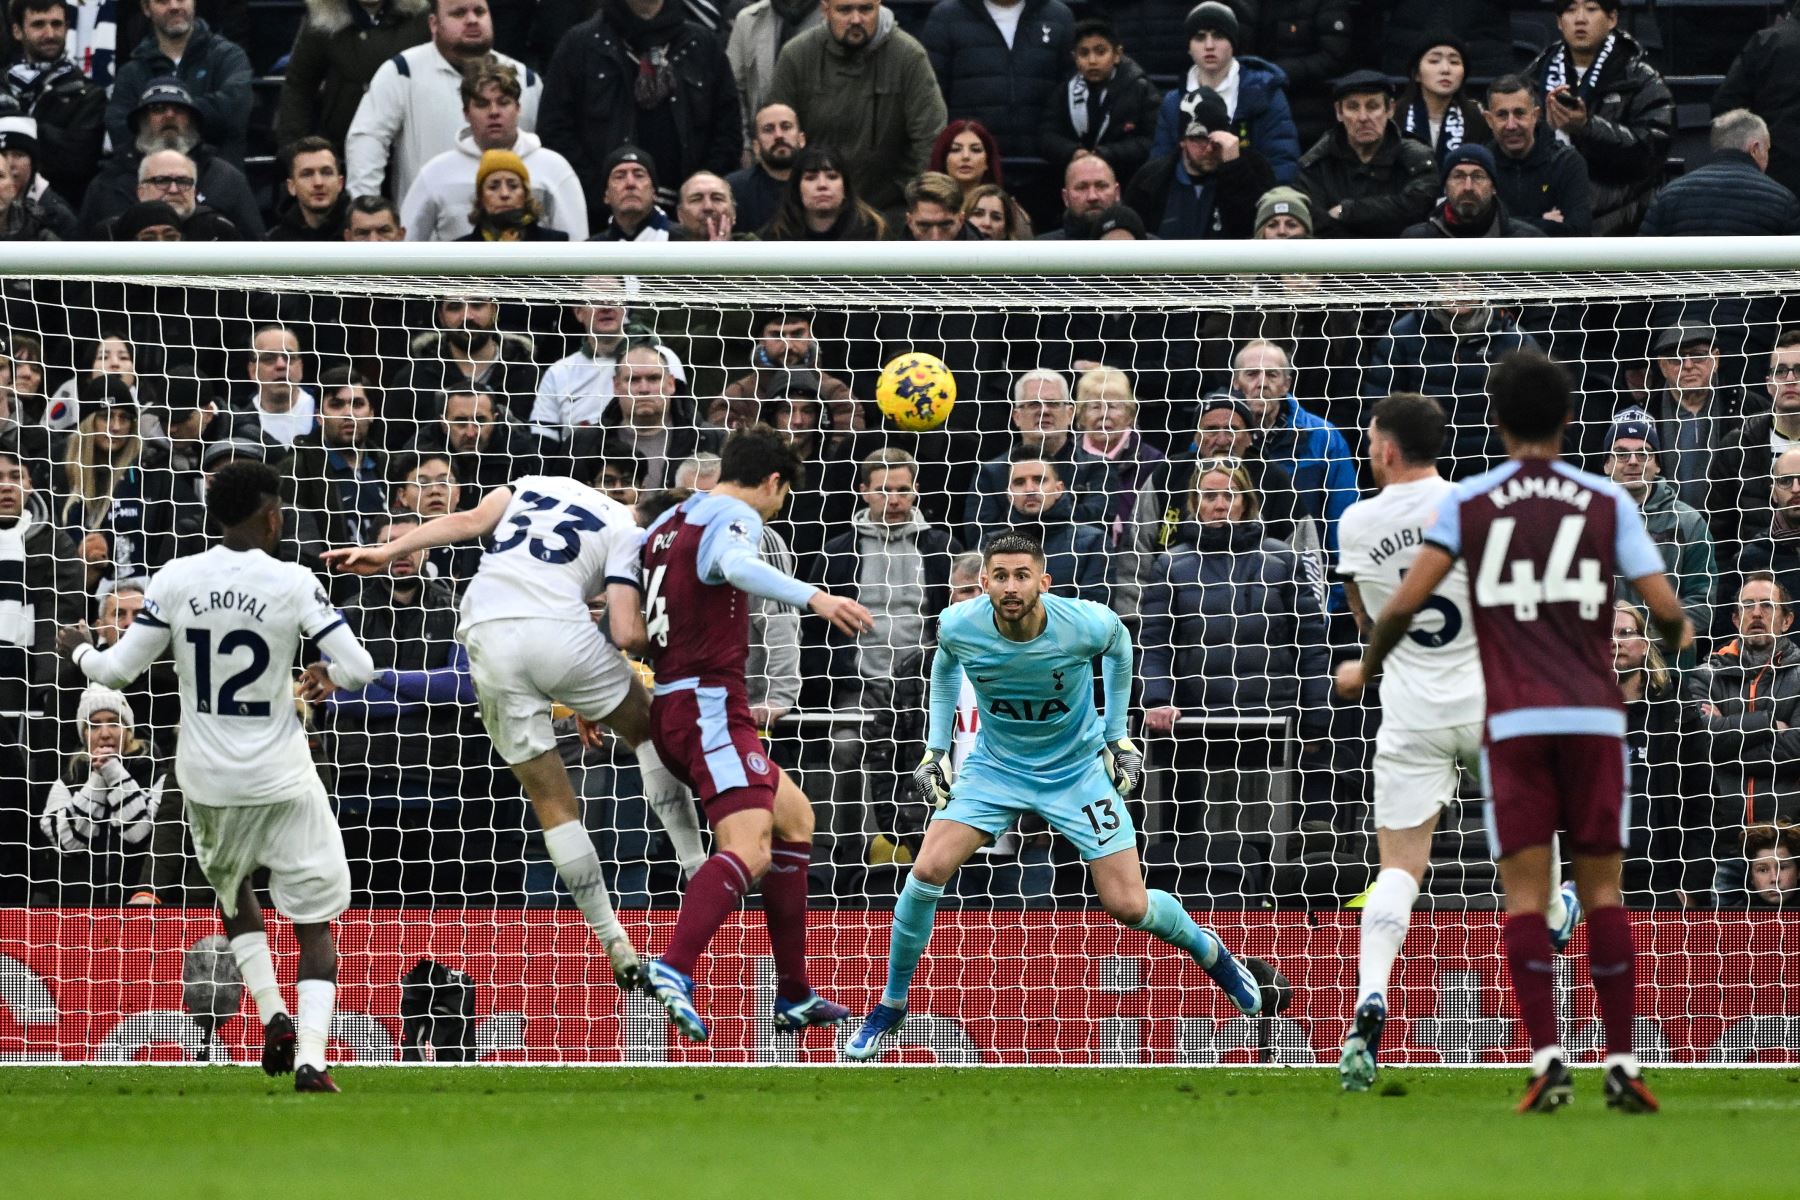 El defensa español del Aston Villa, Pau Torres, encabeza el balón y anota el primer gol de su equipo durante el partido de fútbol de la Premier League inglesa entre Tottenham Hotspur y Aston Villa en el estadio Tottenham Hotspur de Londres.
Foto: AFP